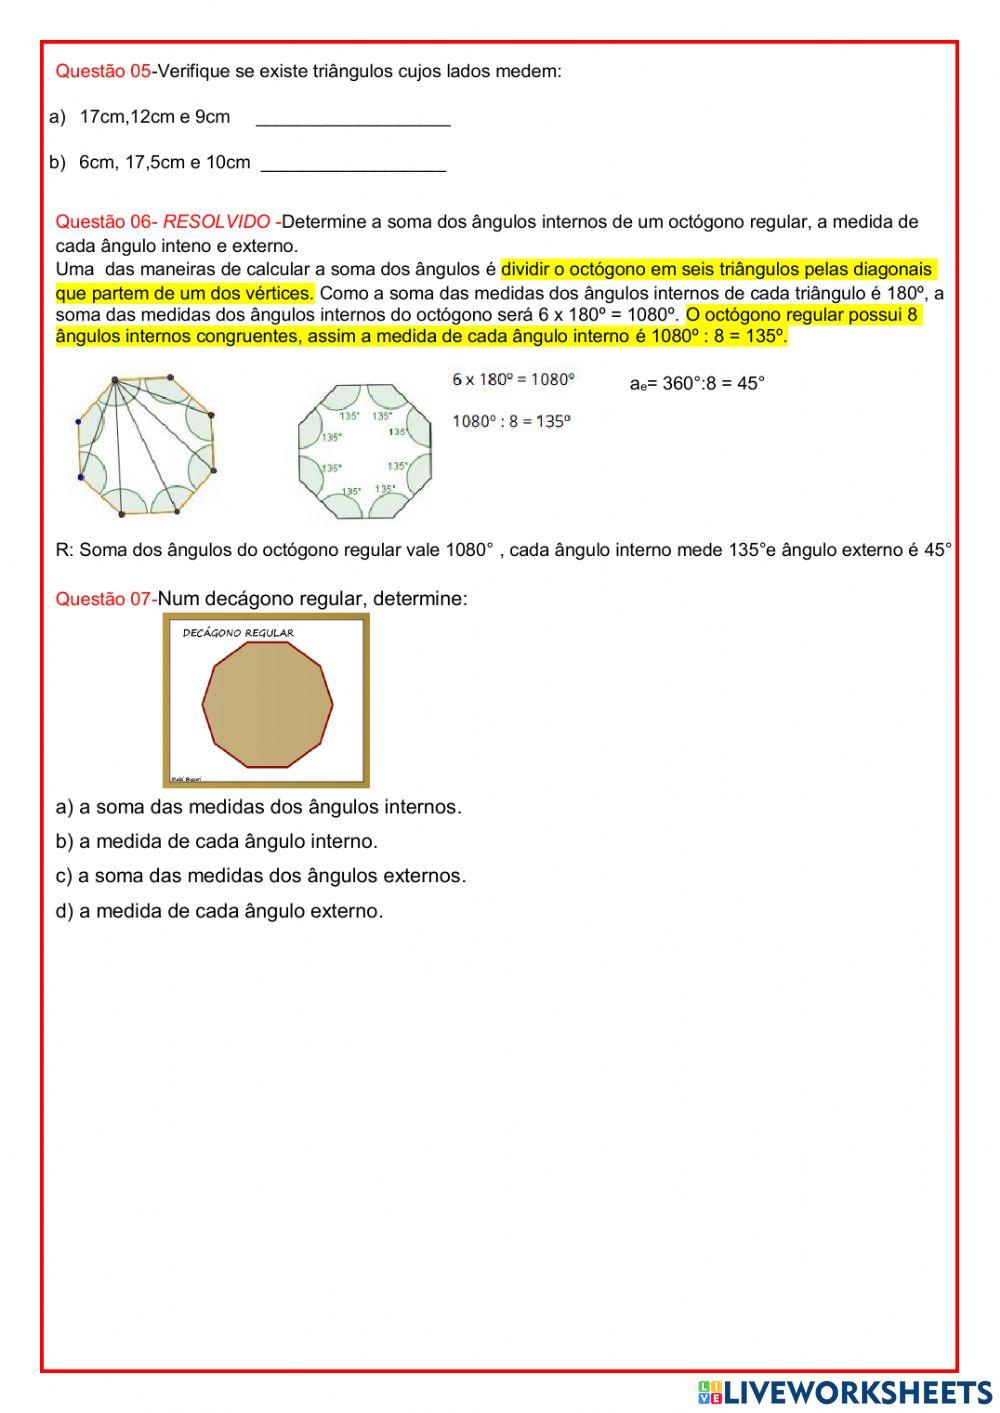 AULA 02-09-2021 Matemática Revisão de Conteúdos: Sequências, Equação do 1° Grau e Polígonos Regulares